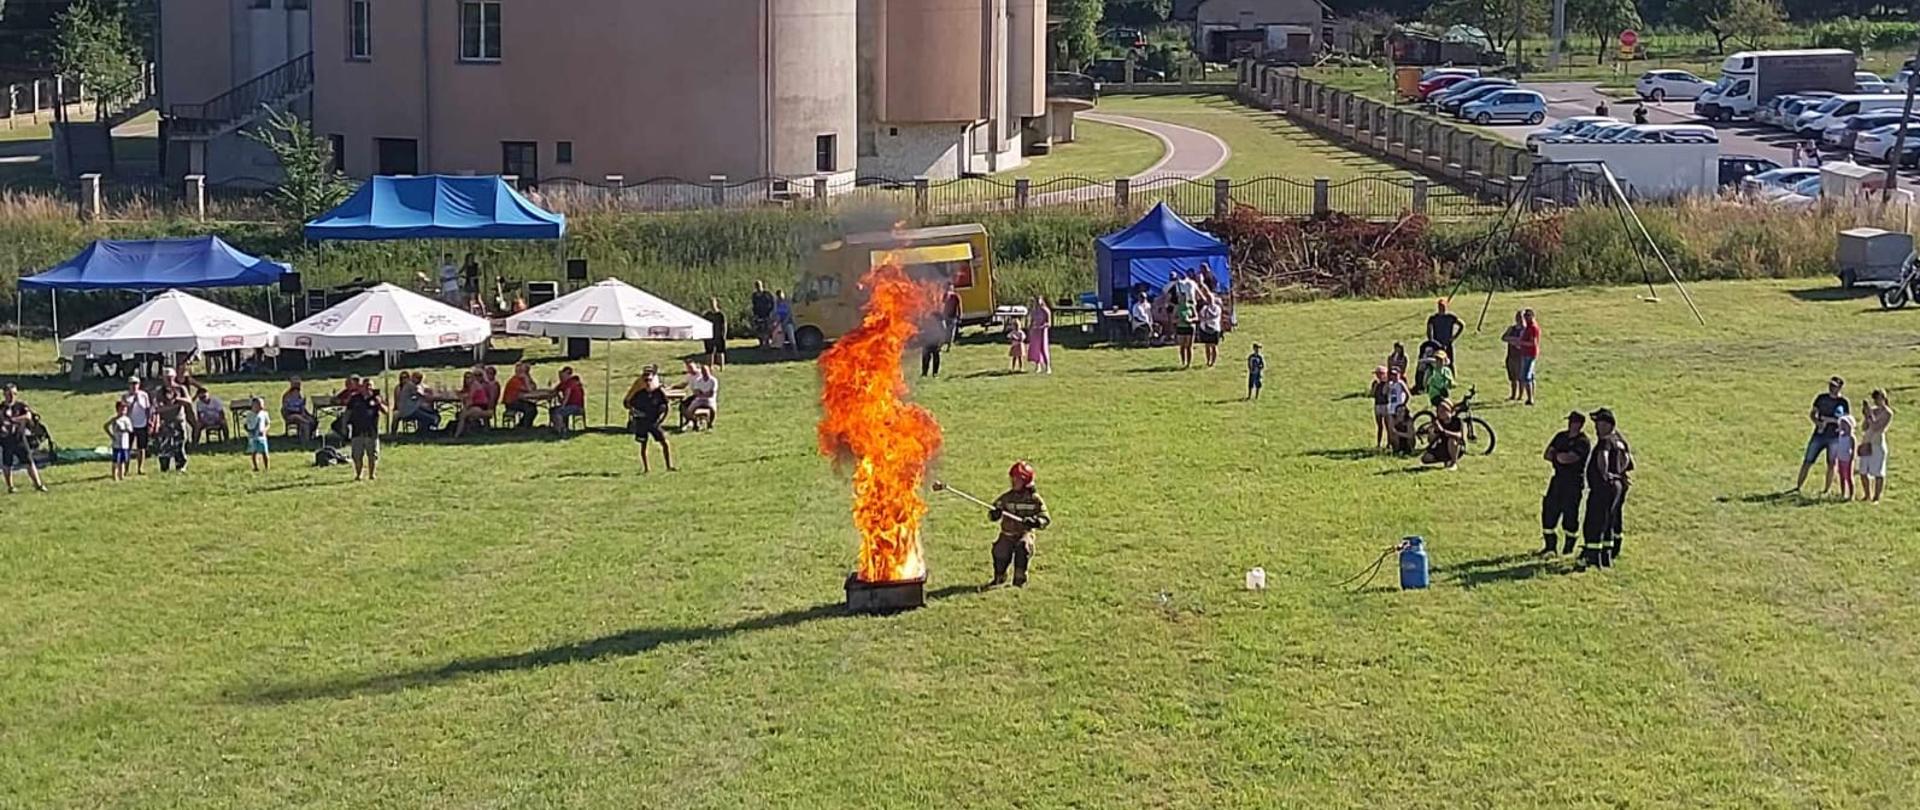 Widok na pokaz strażacki w którym strażak dolewa wody do płonącego oleju pokazując zjawisko wyrzutu. Na terenie pokazu widzowie oraz goście pikniku.